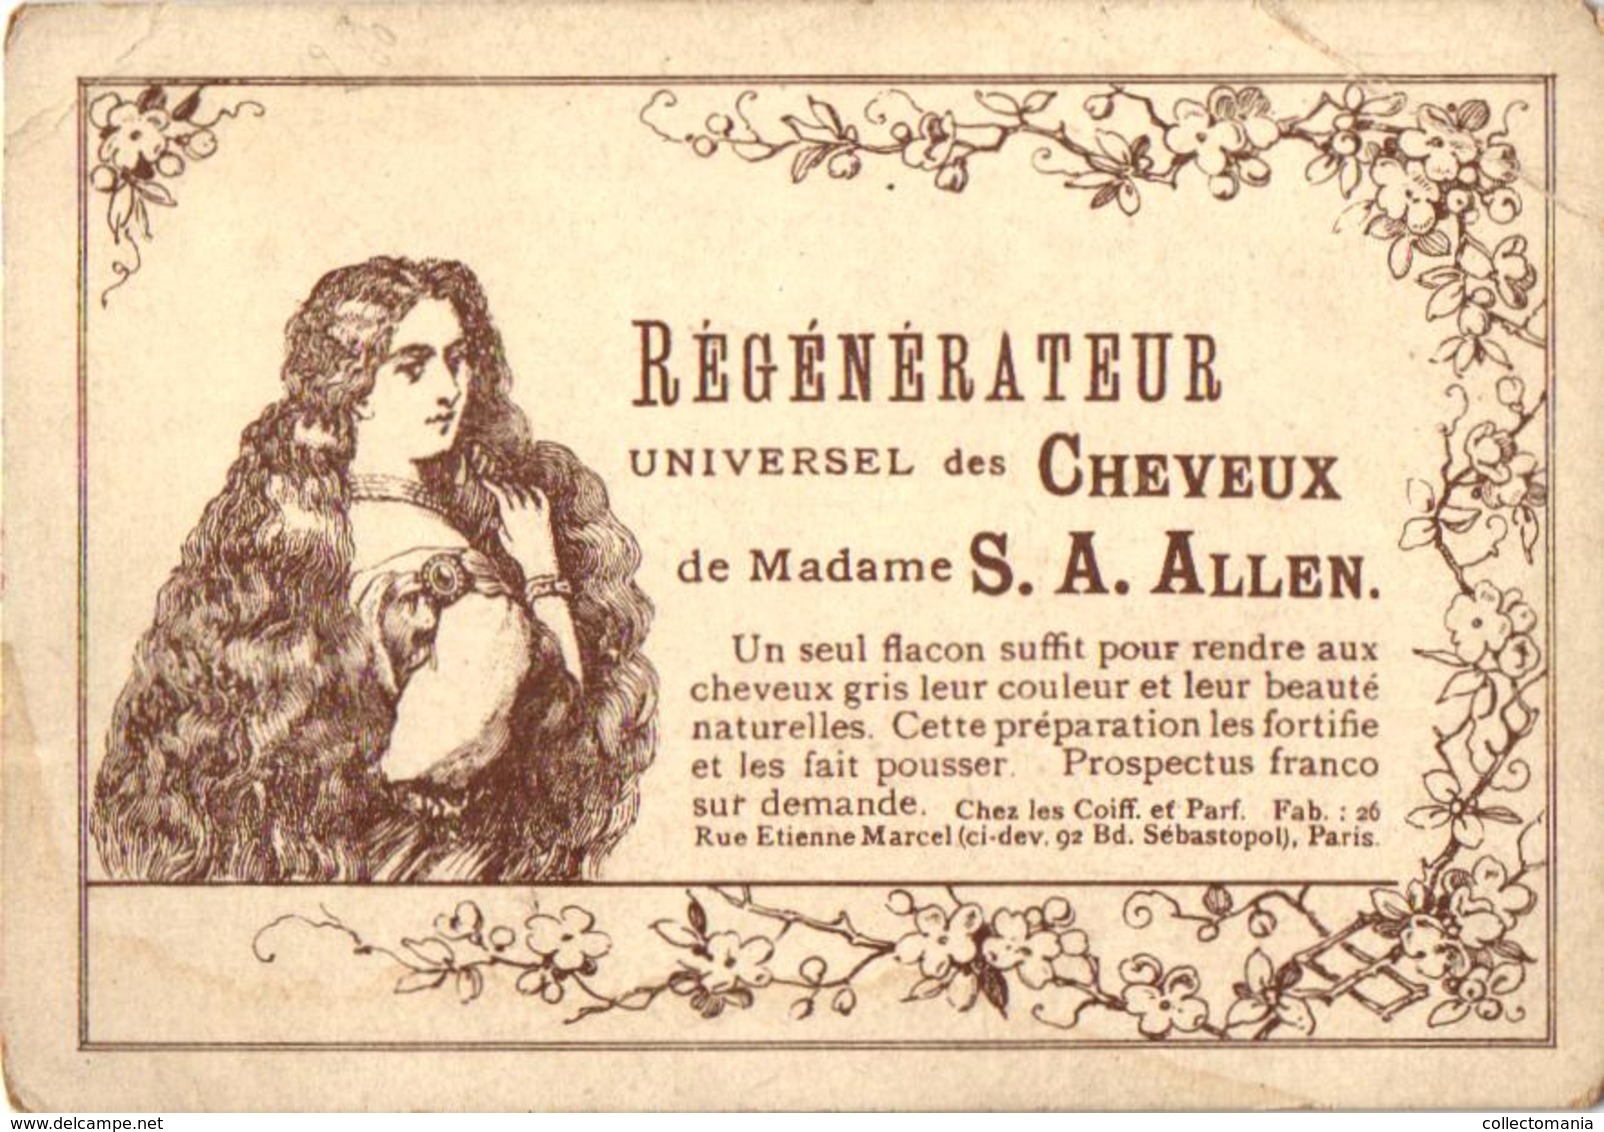 8 Cards Cheveux Hair Madame Allen Régénateur Universel Lithography  pré 1900  Illustr.Champenois